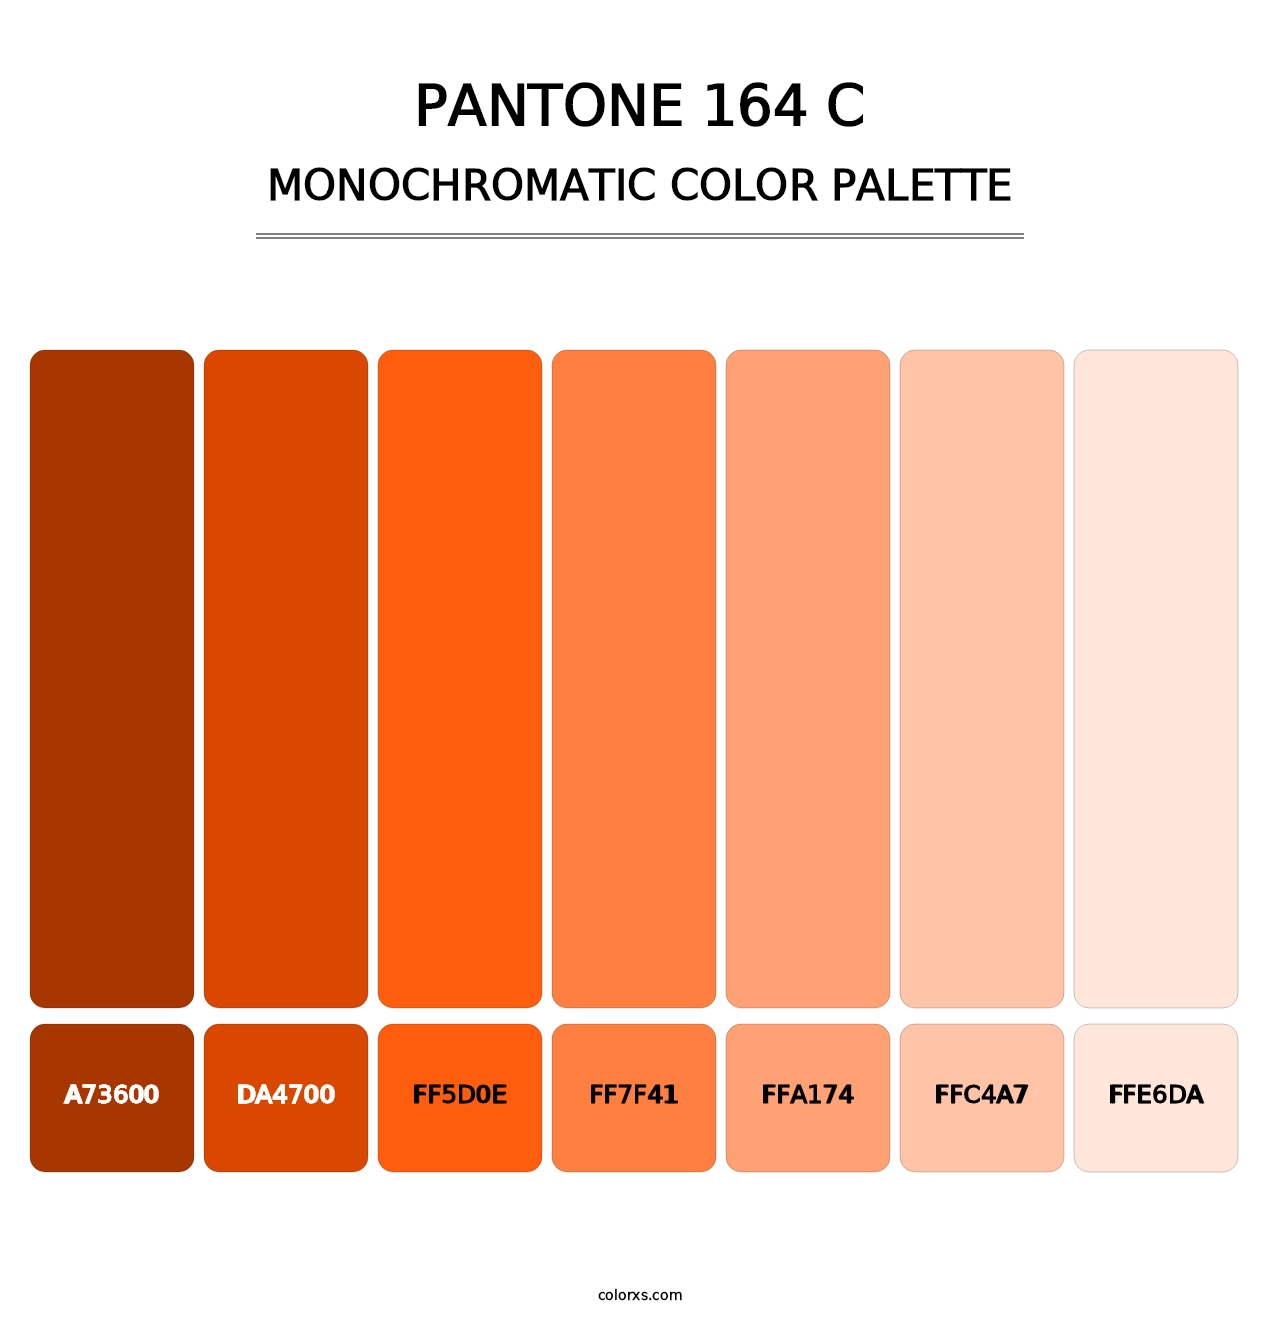 PANTONE 164 C - Monochromatic Color Palette